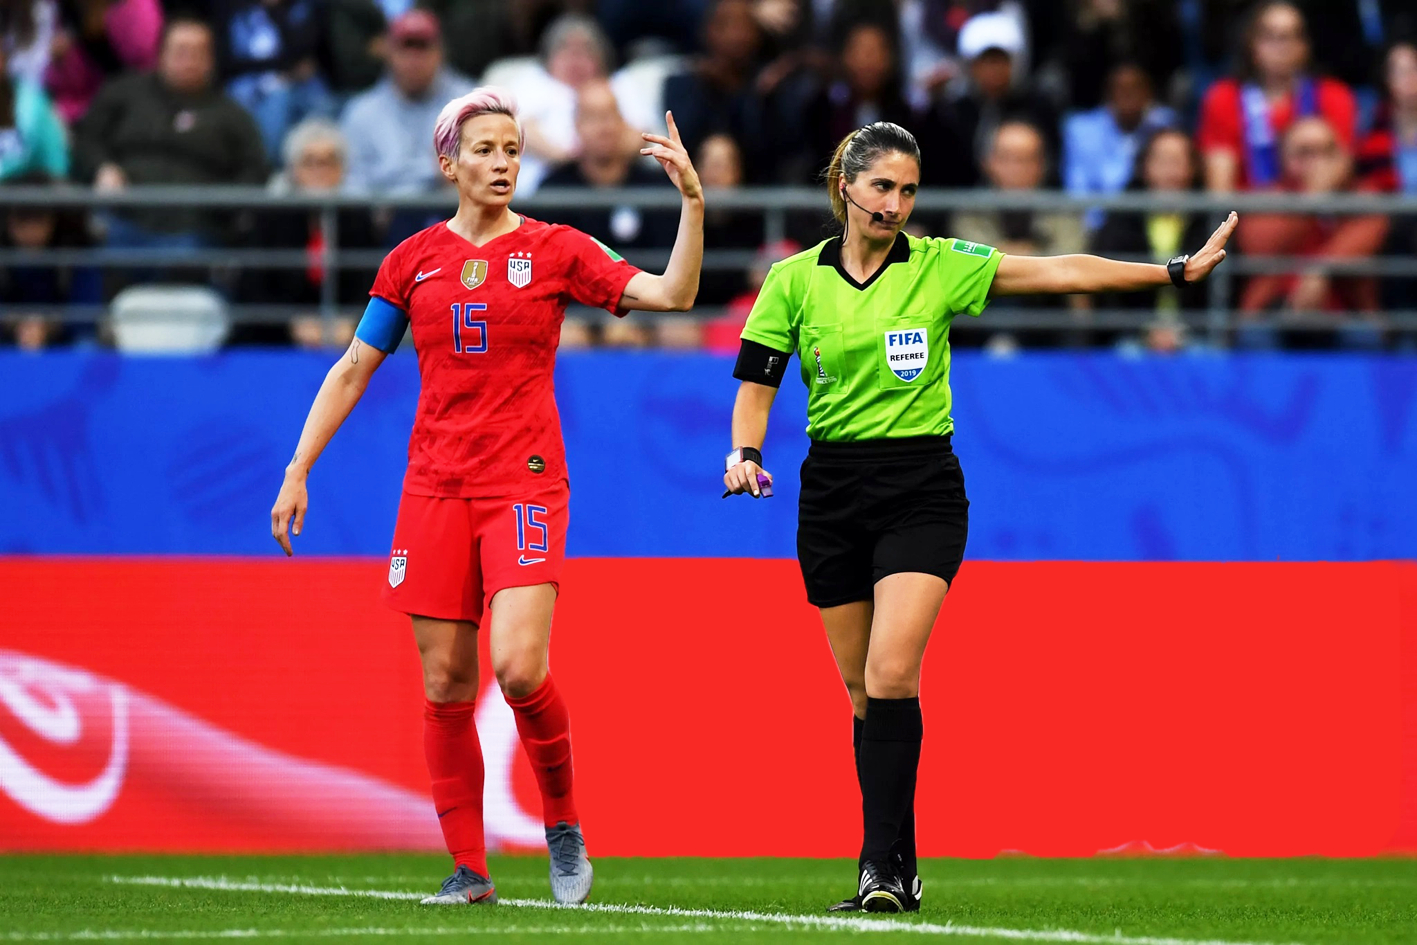 Trọng tài María Laura Fortunato (phải) điều khiển trận đấu giữa đội tuyển Mỹ  và Thái Lan tại Giải vô địch bóng đá nữ thế giới năm 2019 ở Pháp - Nguồn ảnh: FIFA